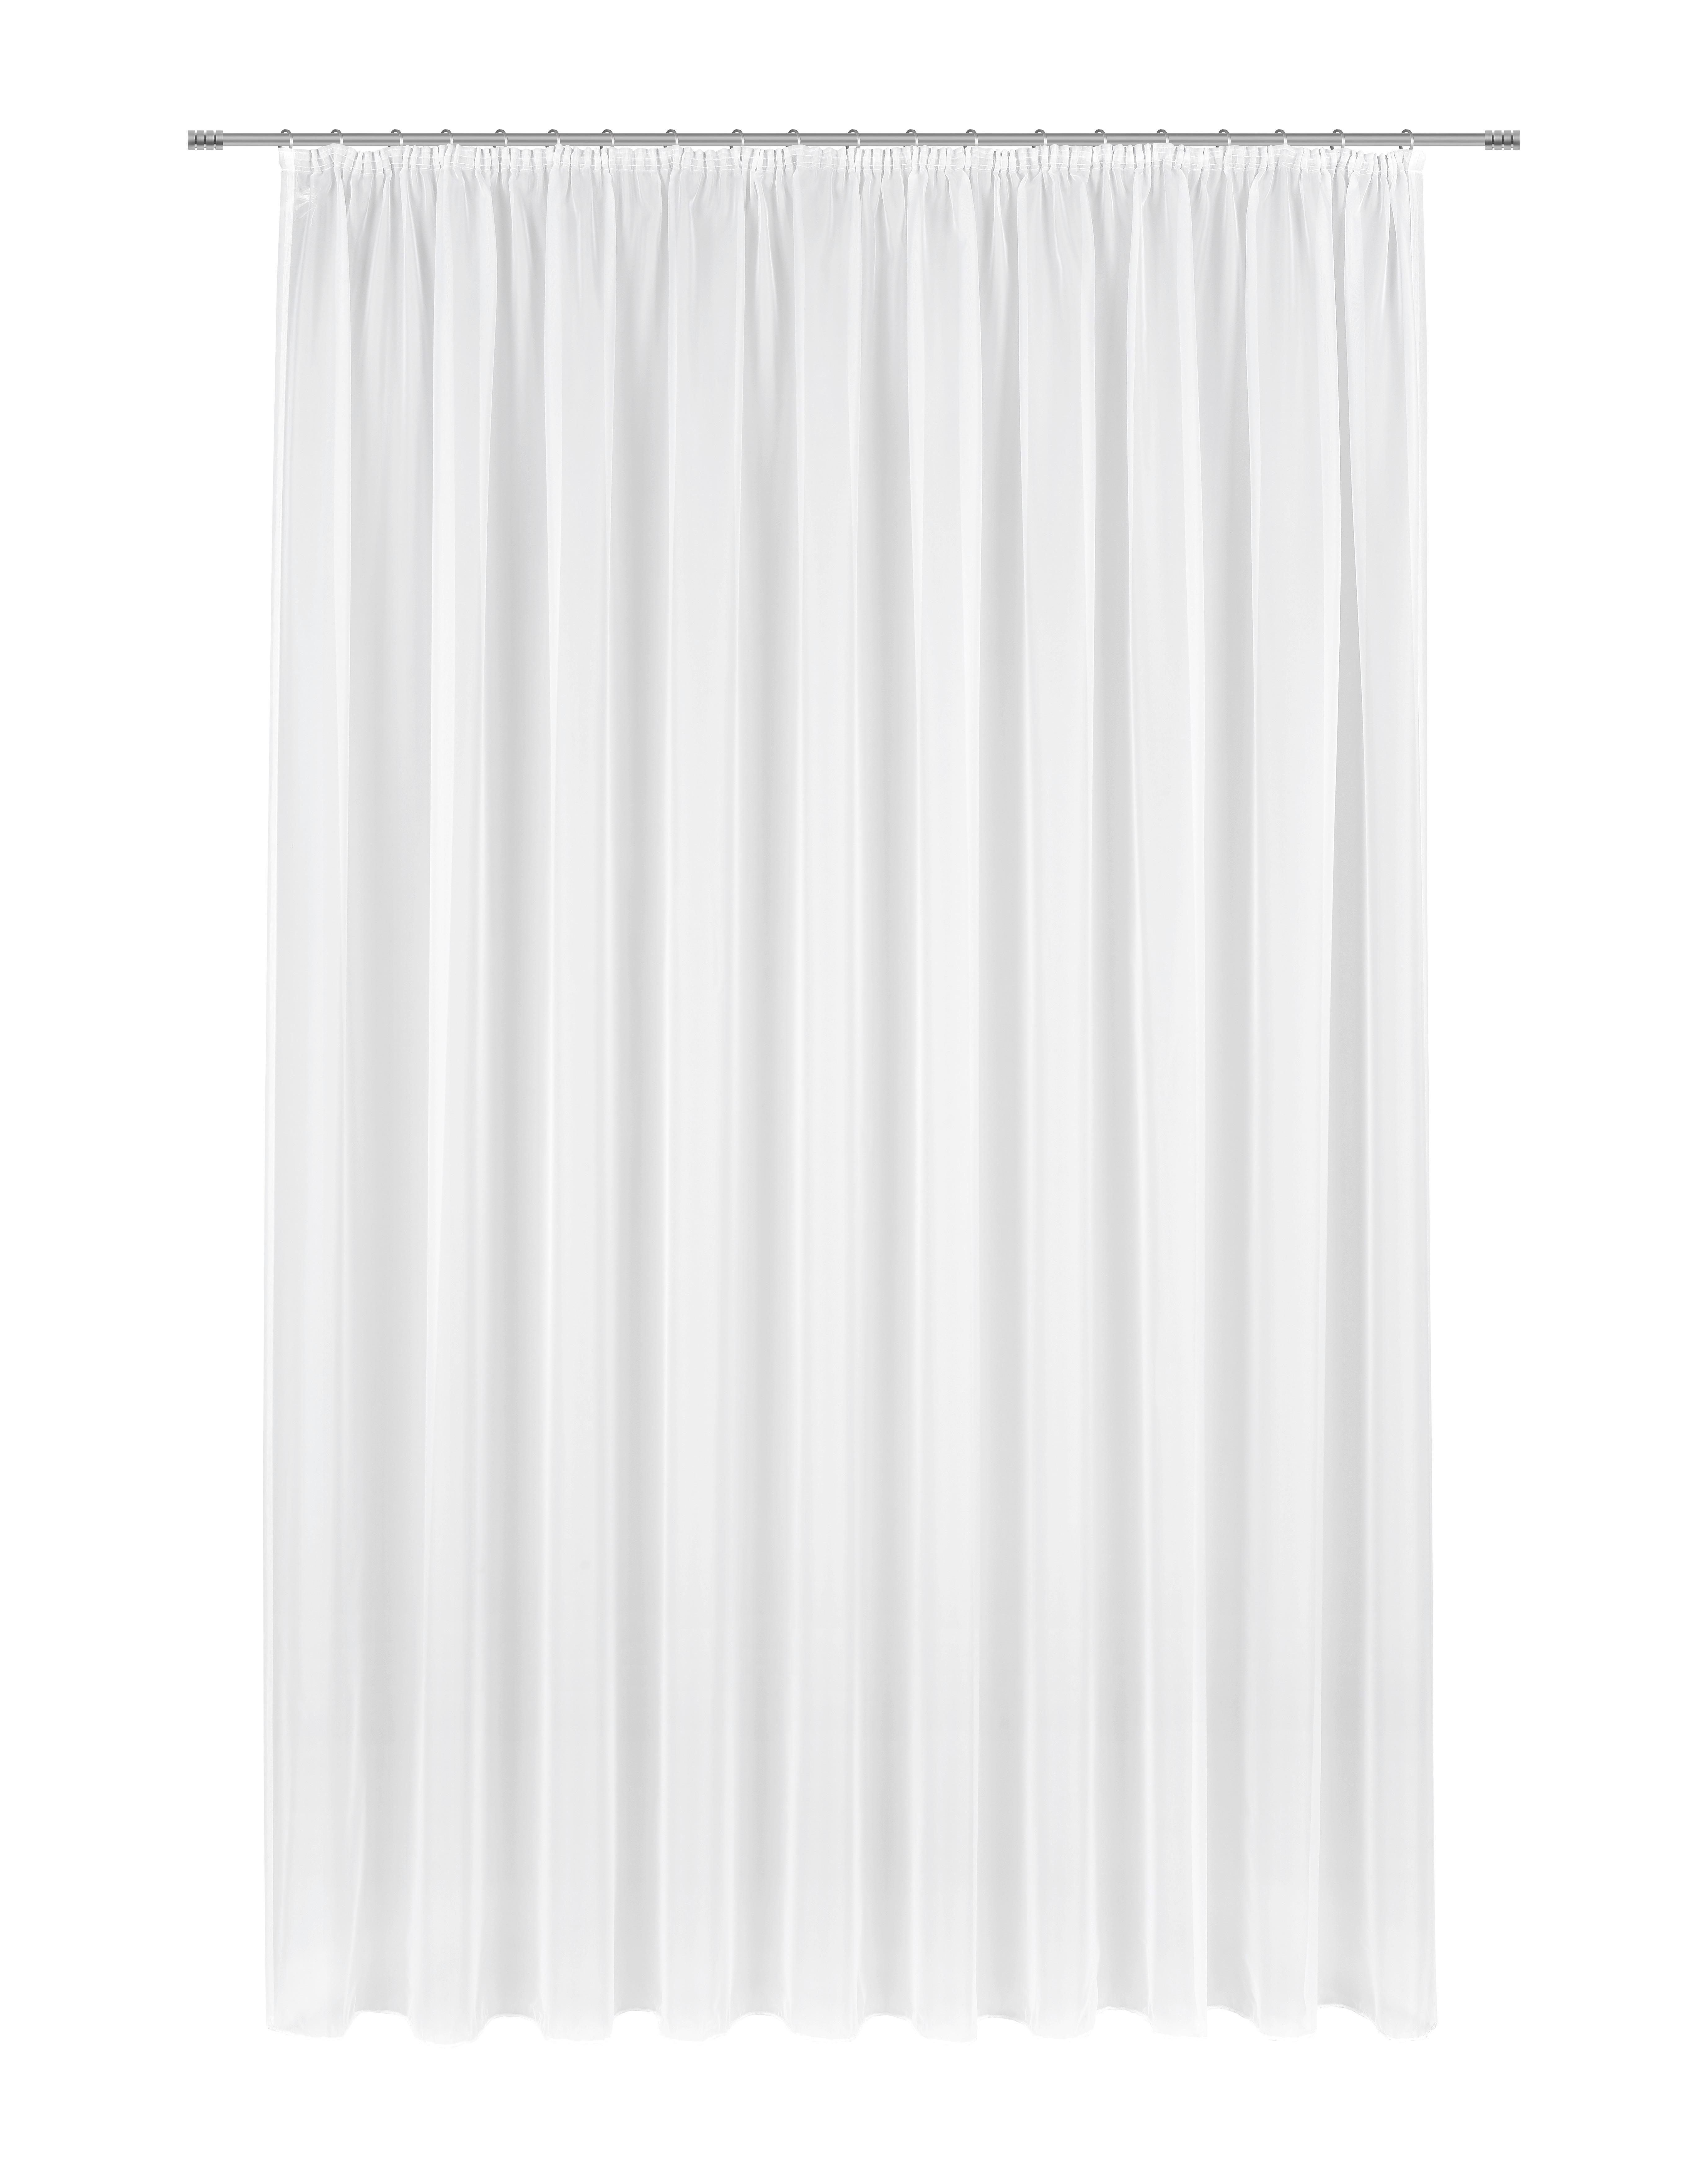 Kusová Záclona Anna Store 3, 300/245 Cm - bílá, Konvenční, textil (300/245cm) - Modern Living